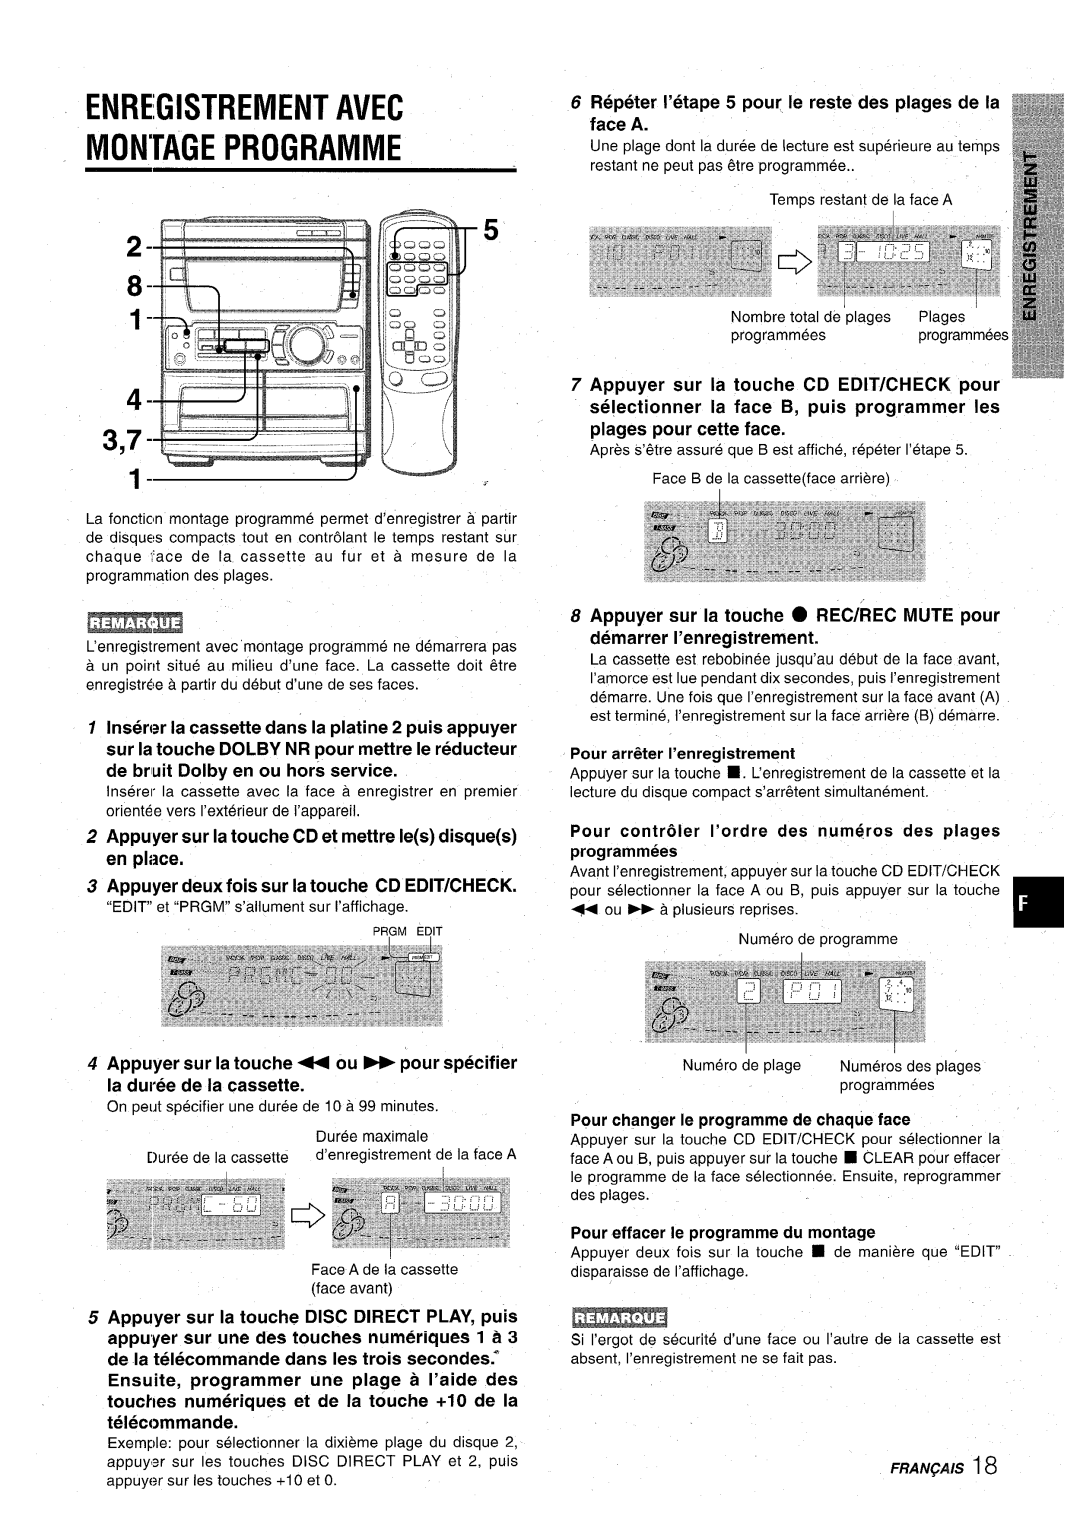 Aiwa CX-NA71 manual Enregistrement Avec Montage Programme, Appuyer deux fois sur la touche CD EDIT/CHECK 